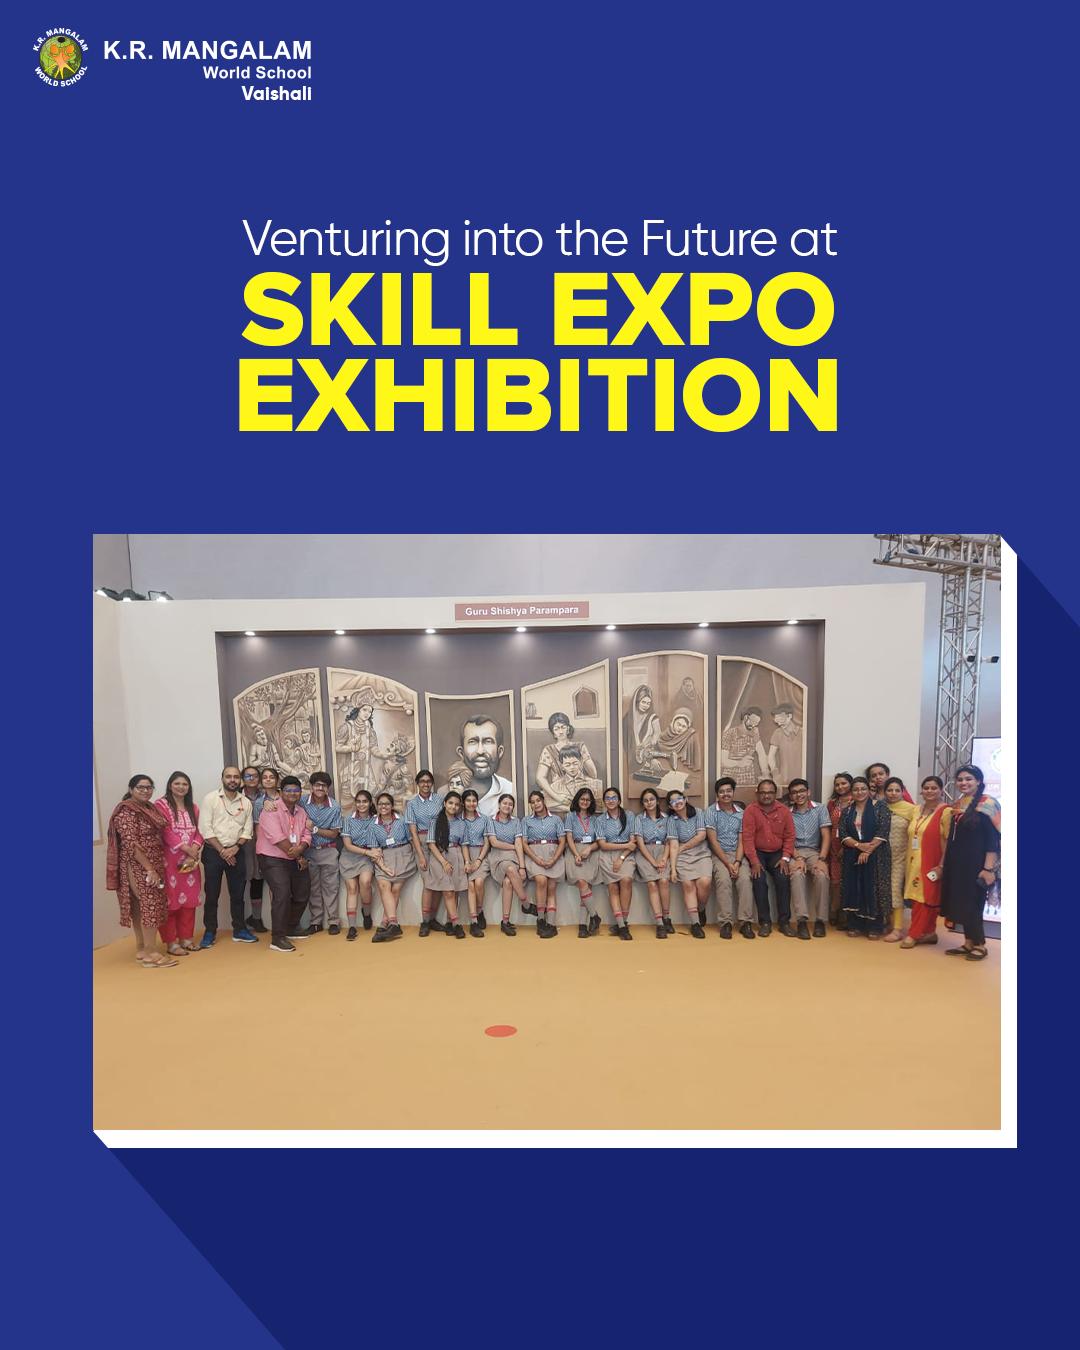 Skill Expo Exhibition